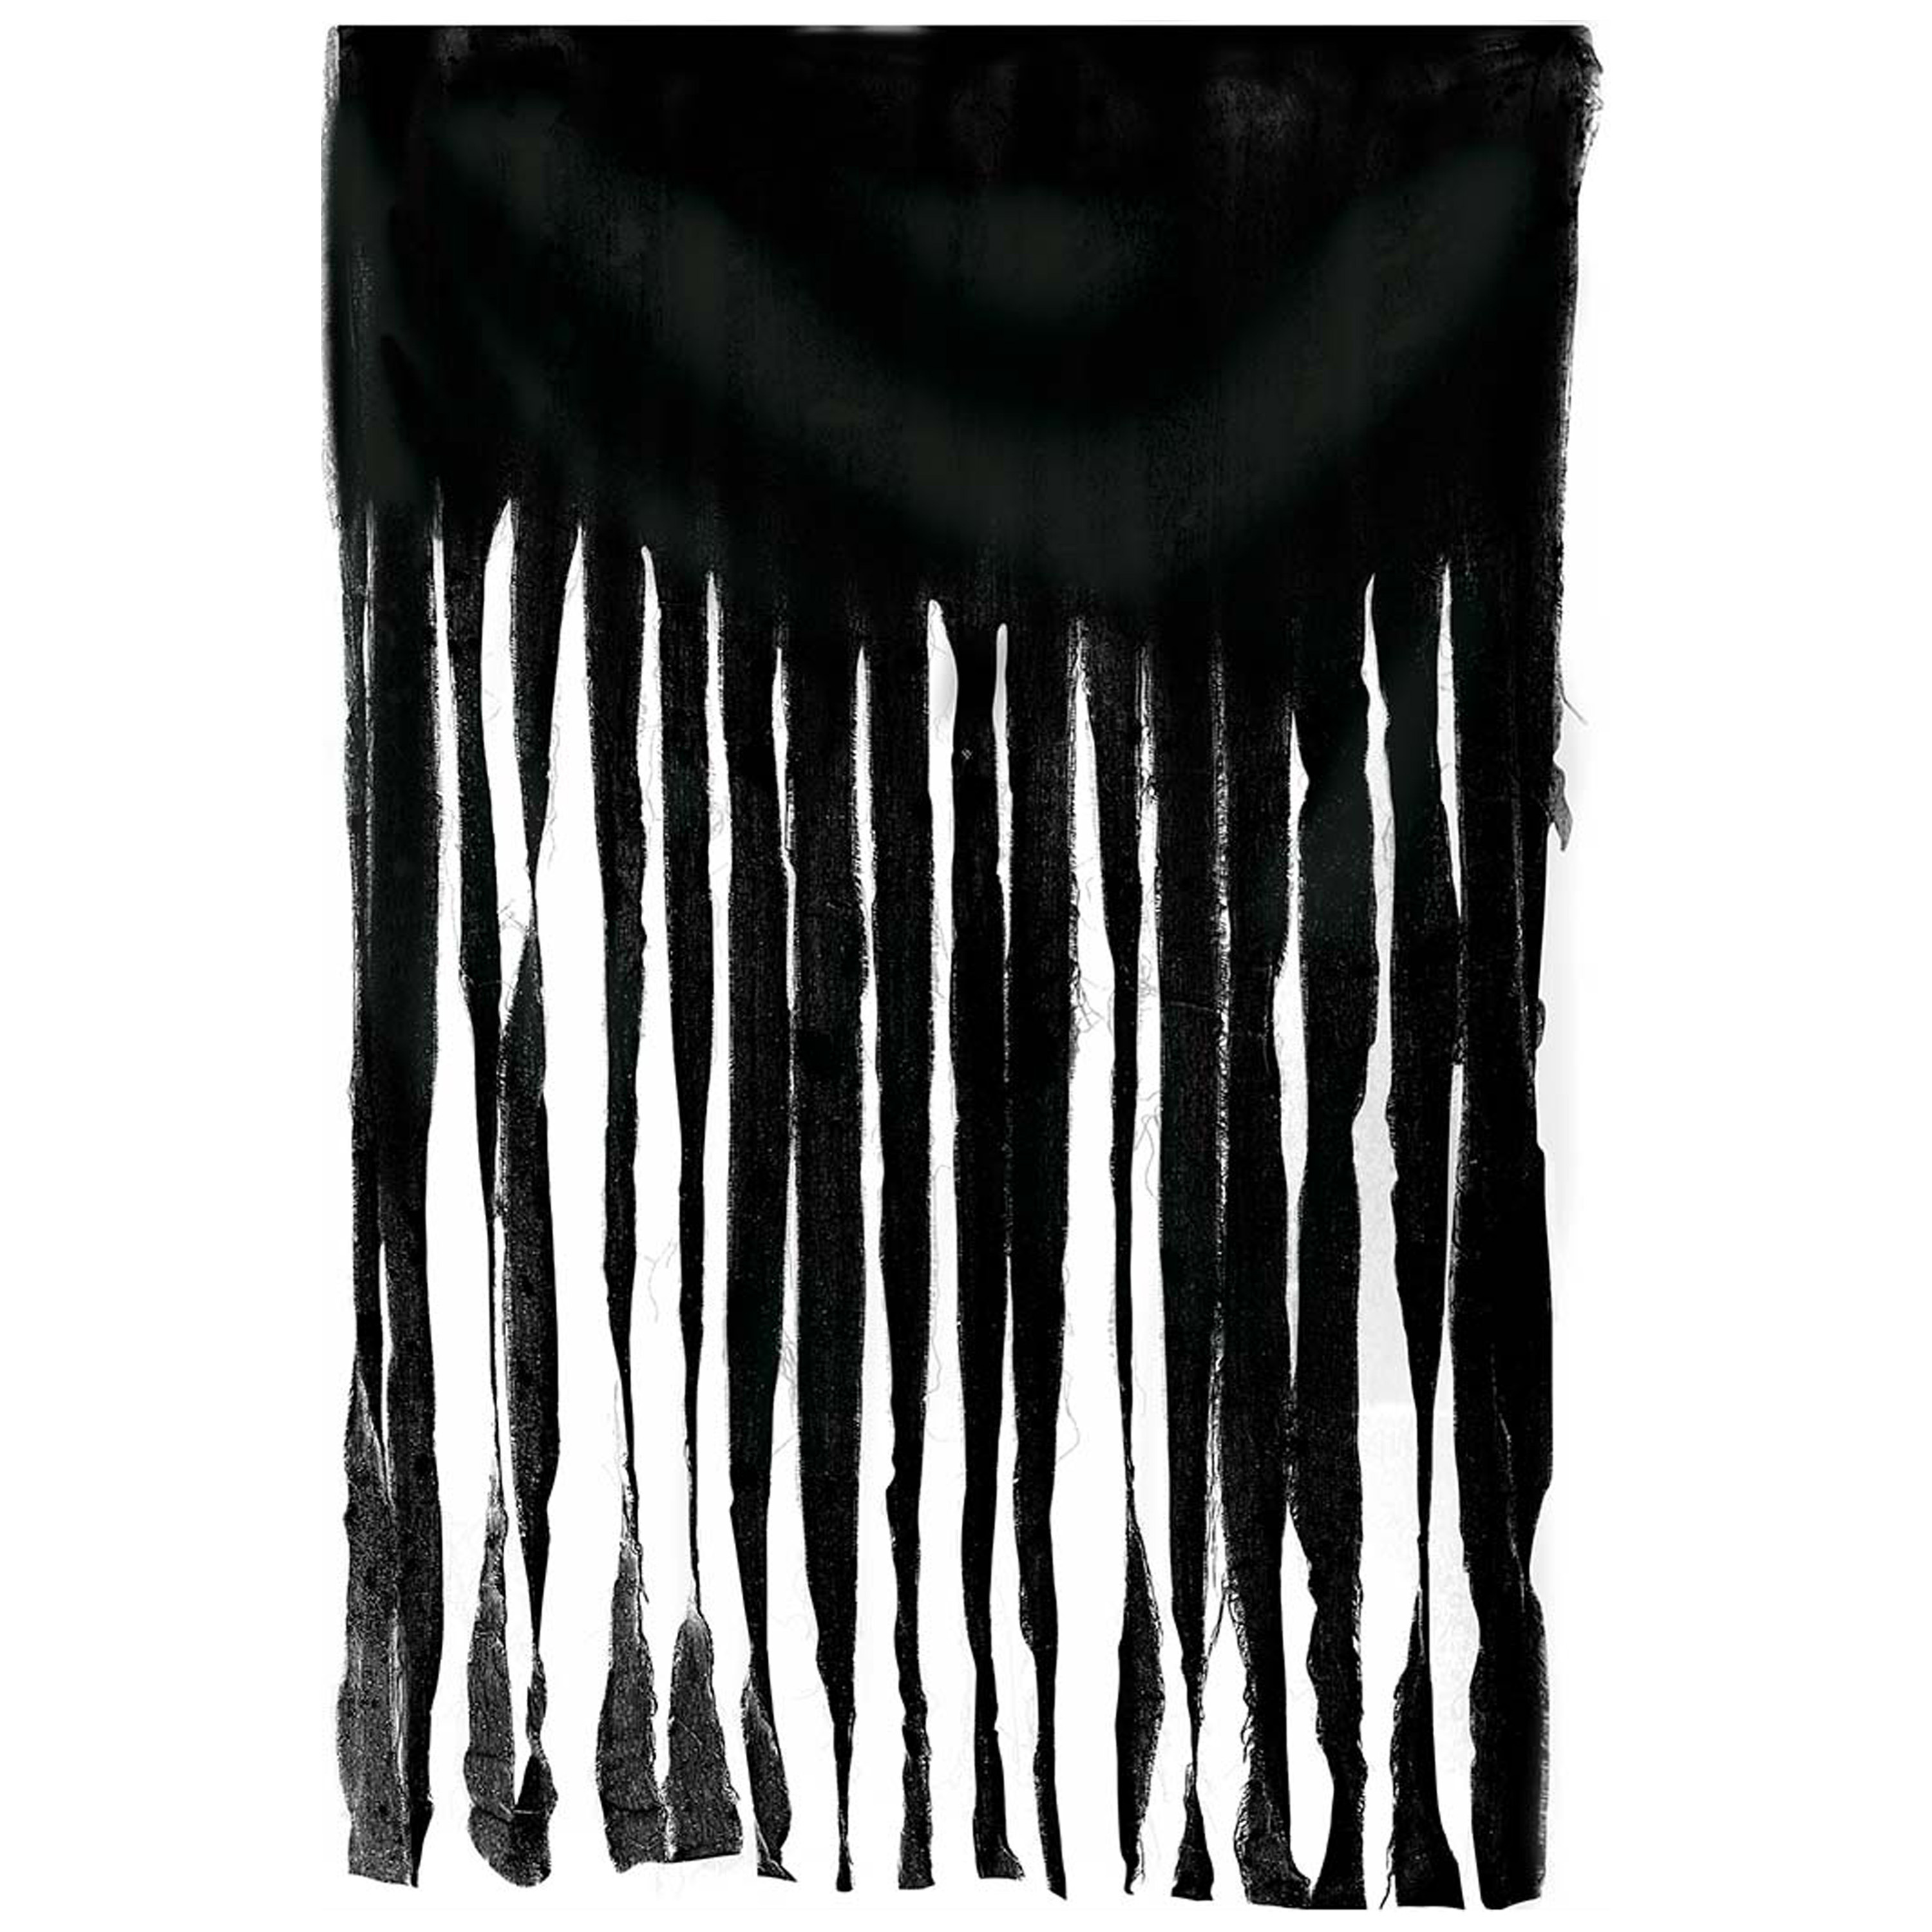 Horror-halloween deco wand-muur-plafond gordijn stof zwart 100 x 200 cm griezel uitstraling